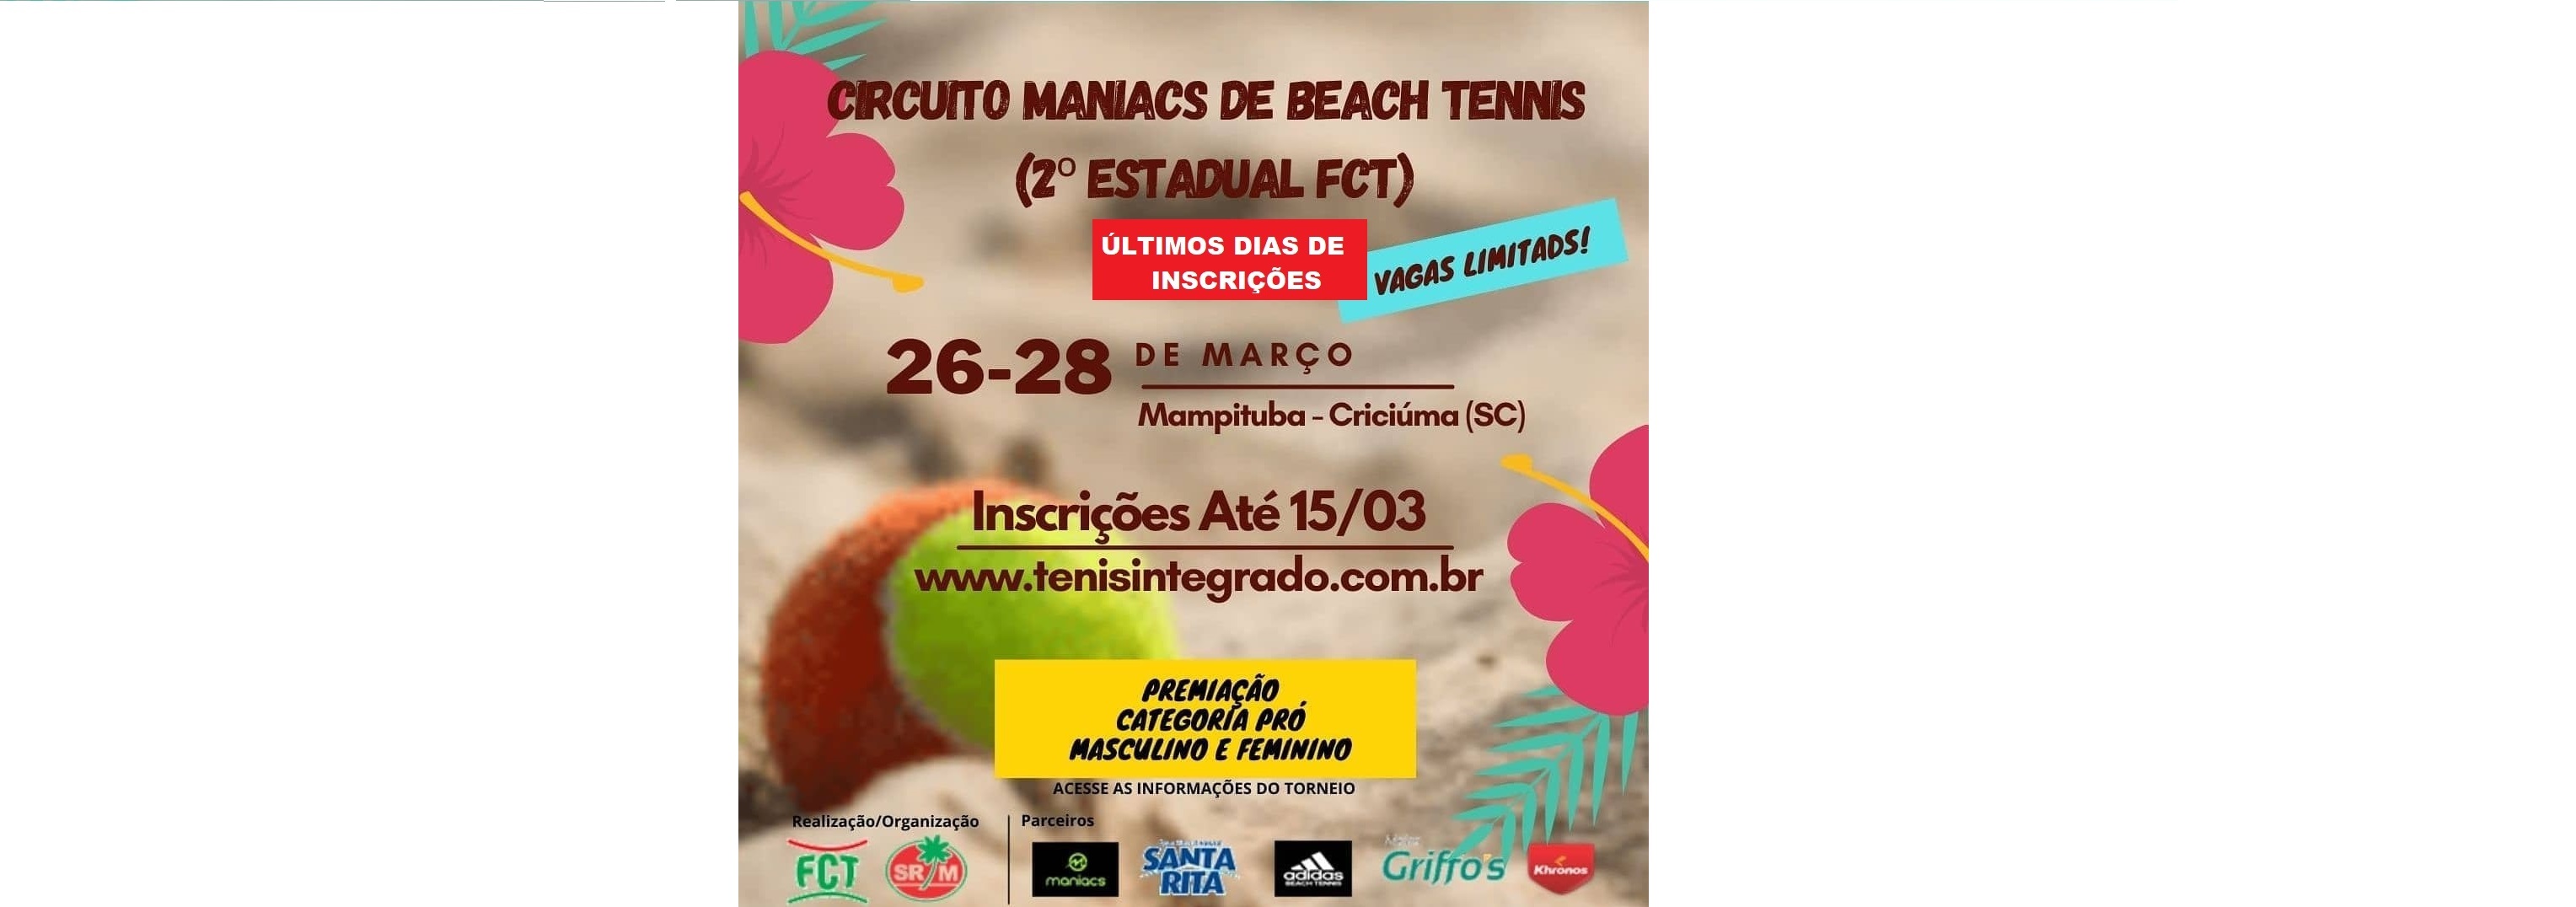 Últimos dias das inscrições para o Circuito Maniacs de Beach Tennis 2021 (2ª Etapa)!